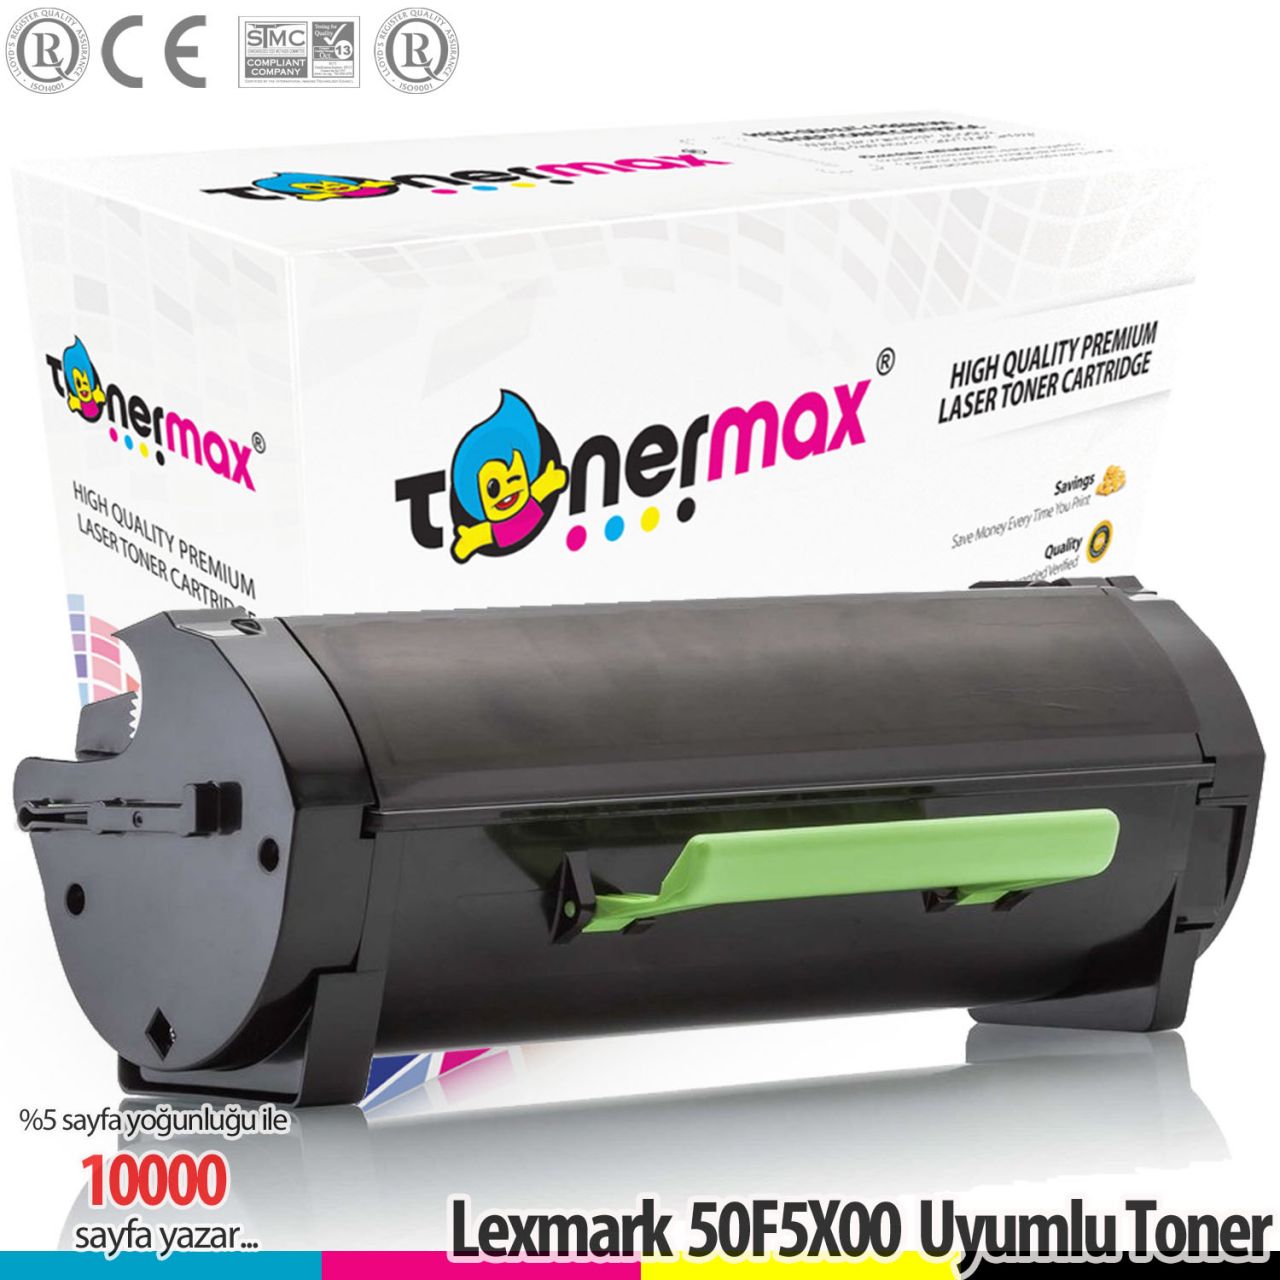 Lexmark 505X / 50F5X00 MS410 / MS510 / MS610 A Plus Muadil Toner 10K